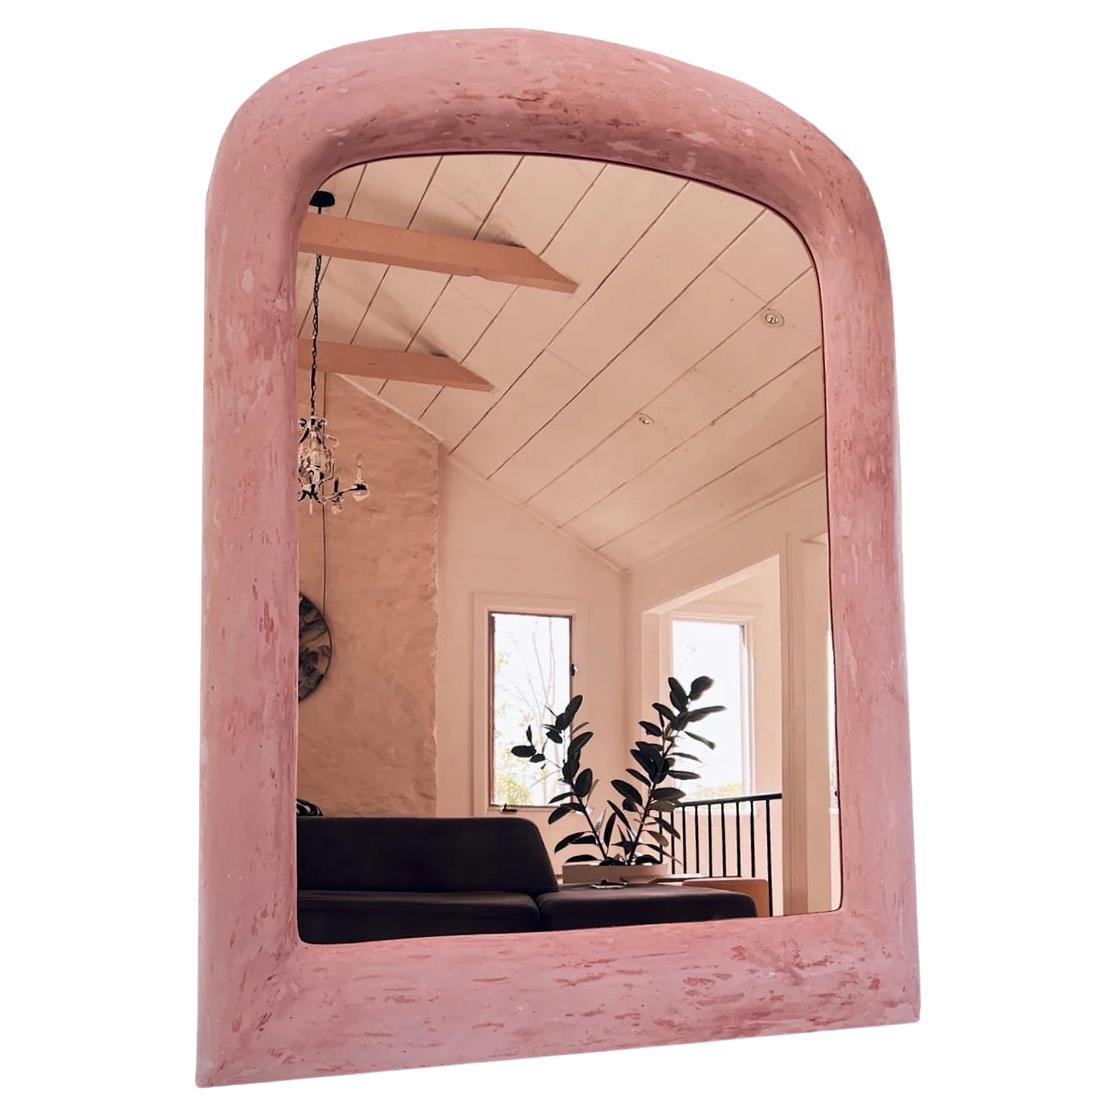 Miroir d'automne par Dean&Dahl, REP par Tuleste Factory